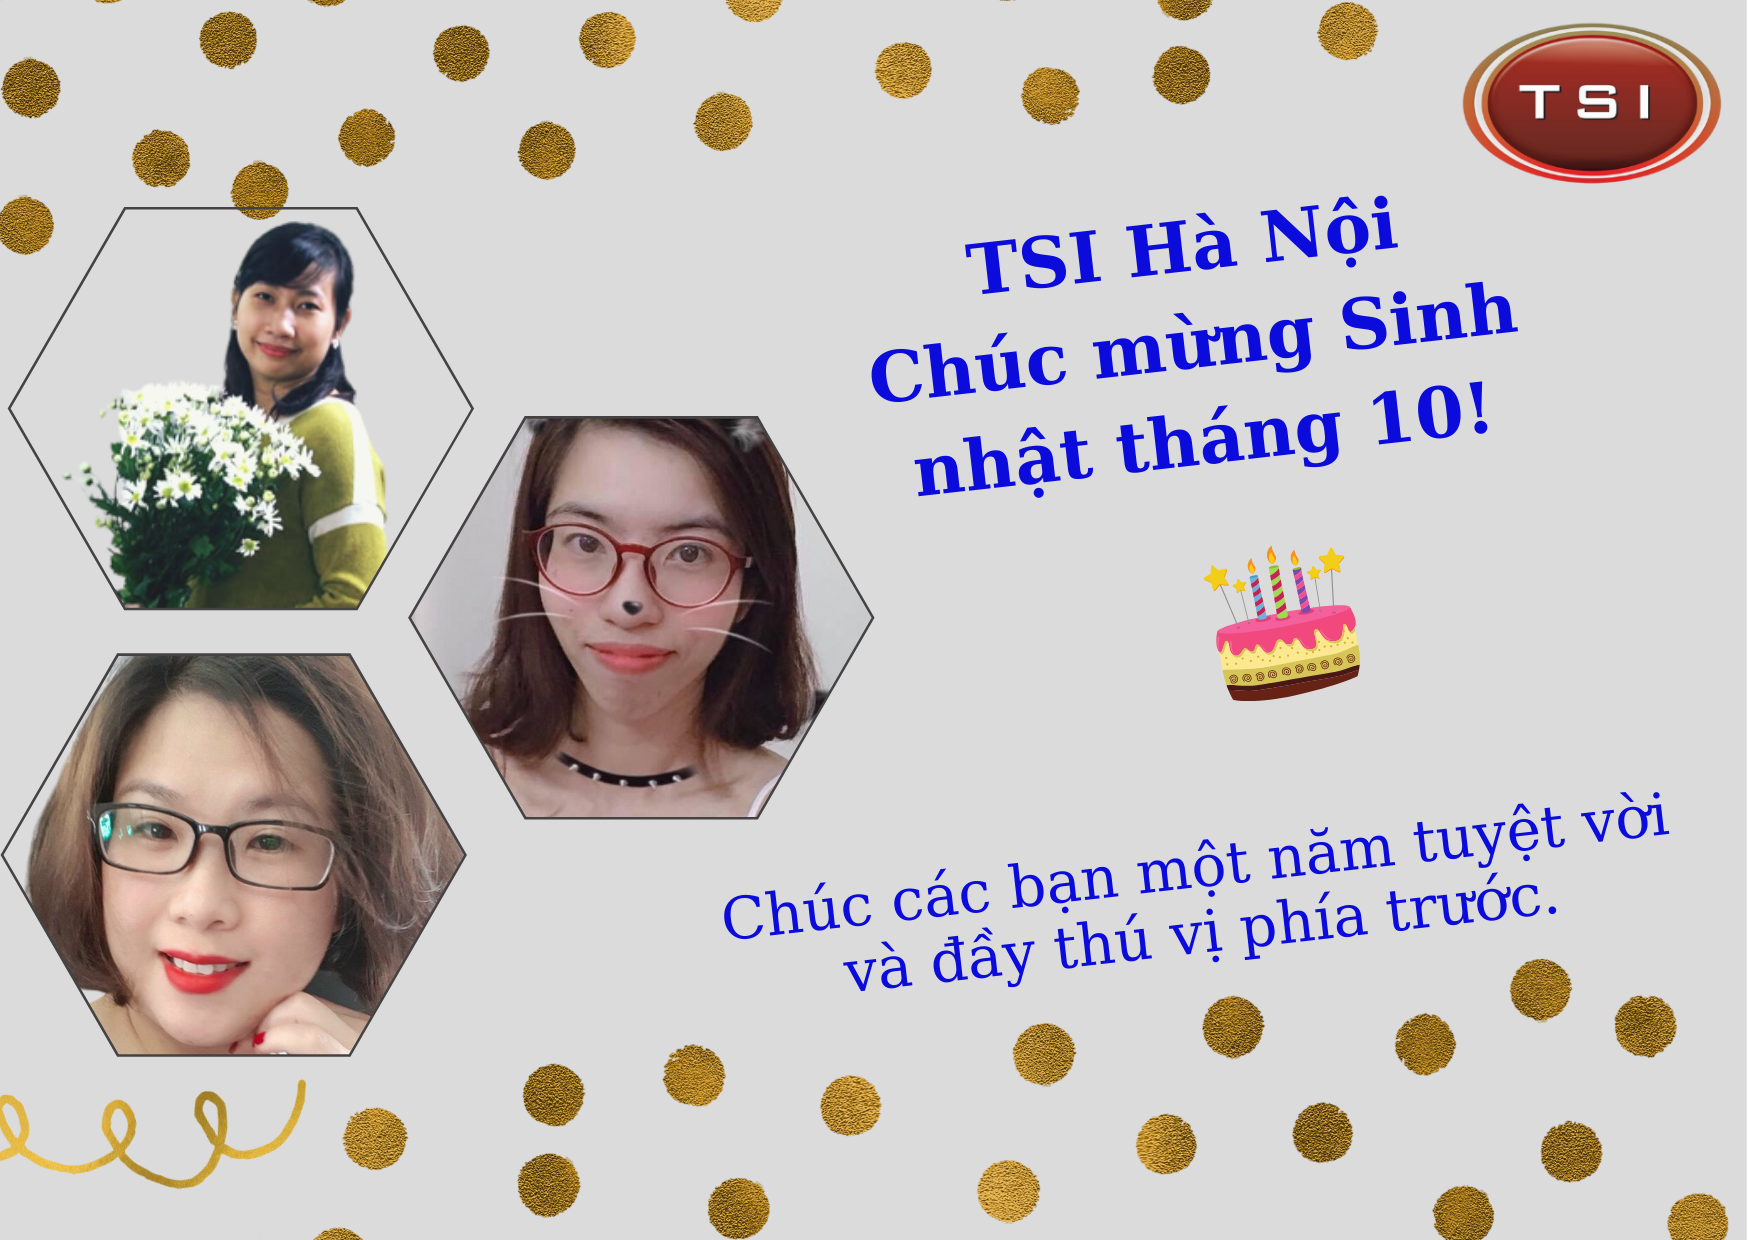 TSI Hà Nội chúc mừng sinh nhật nhân viên tháng 10.2021